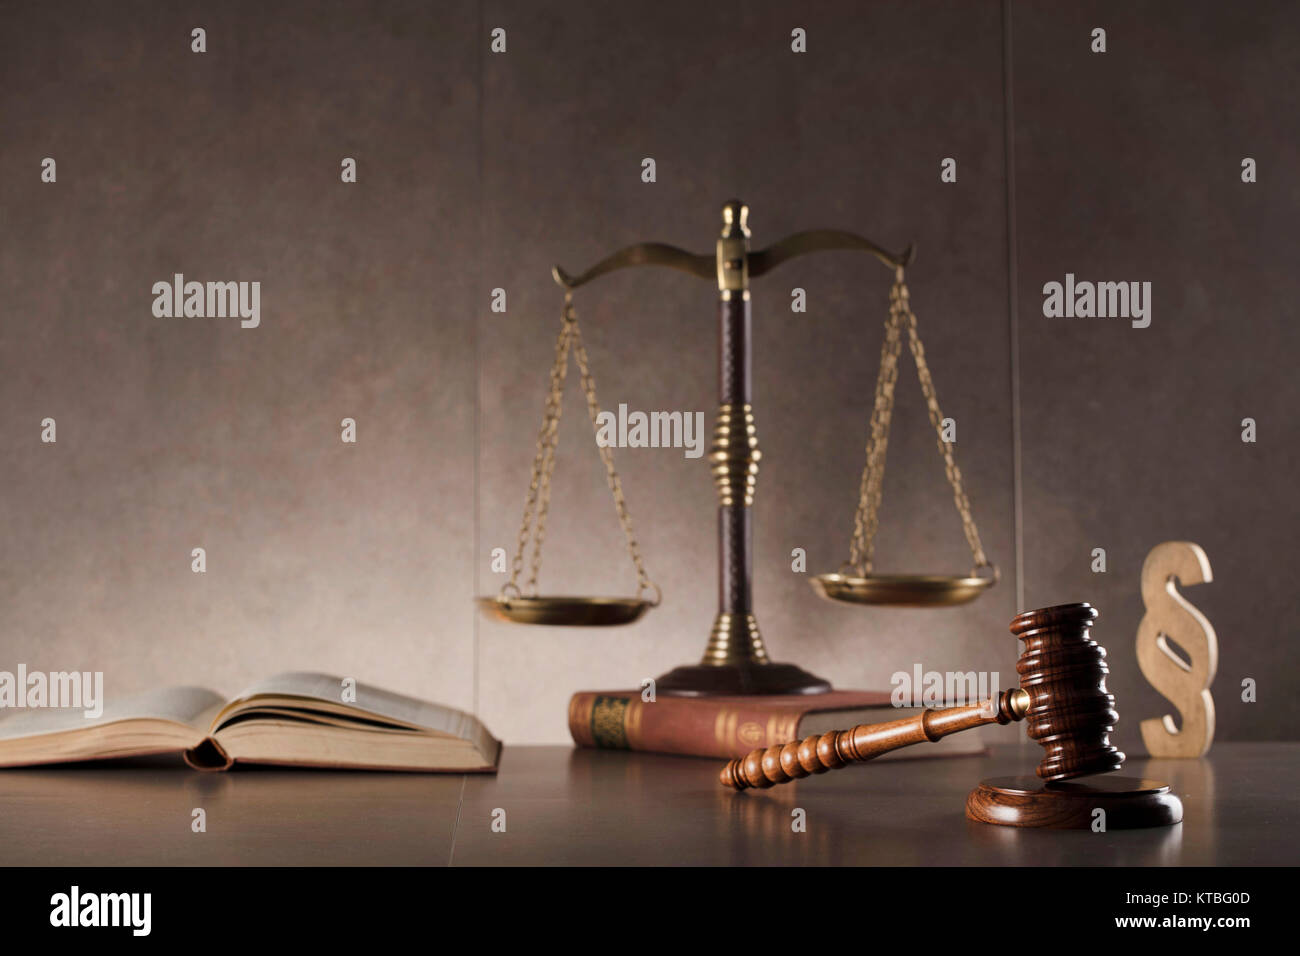 Ancien juge gavel,scale, réserver et paragraph sign - droit des symboles sur table en pierre et l'arrière-plan. Banque D'Images